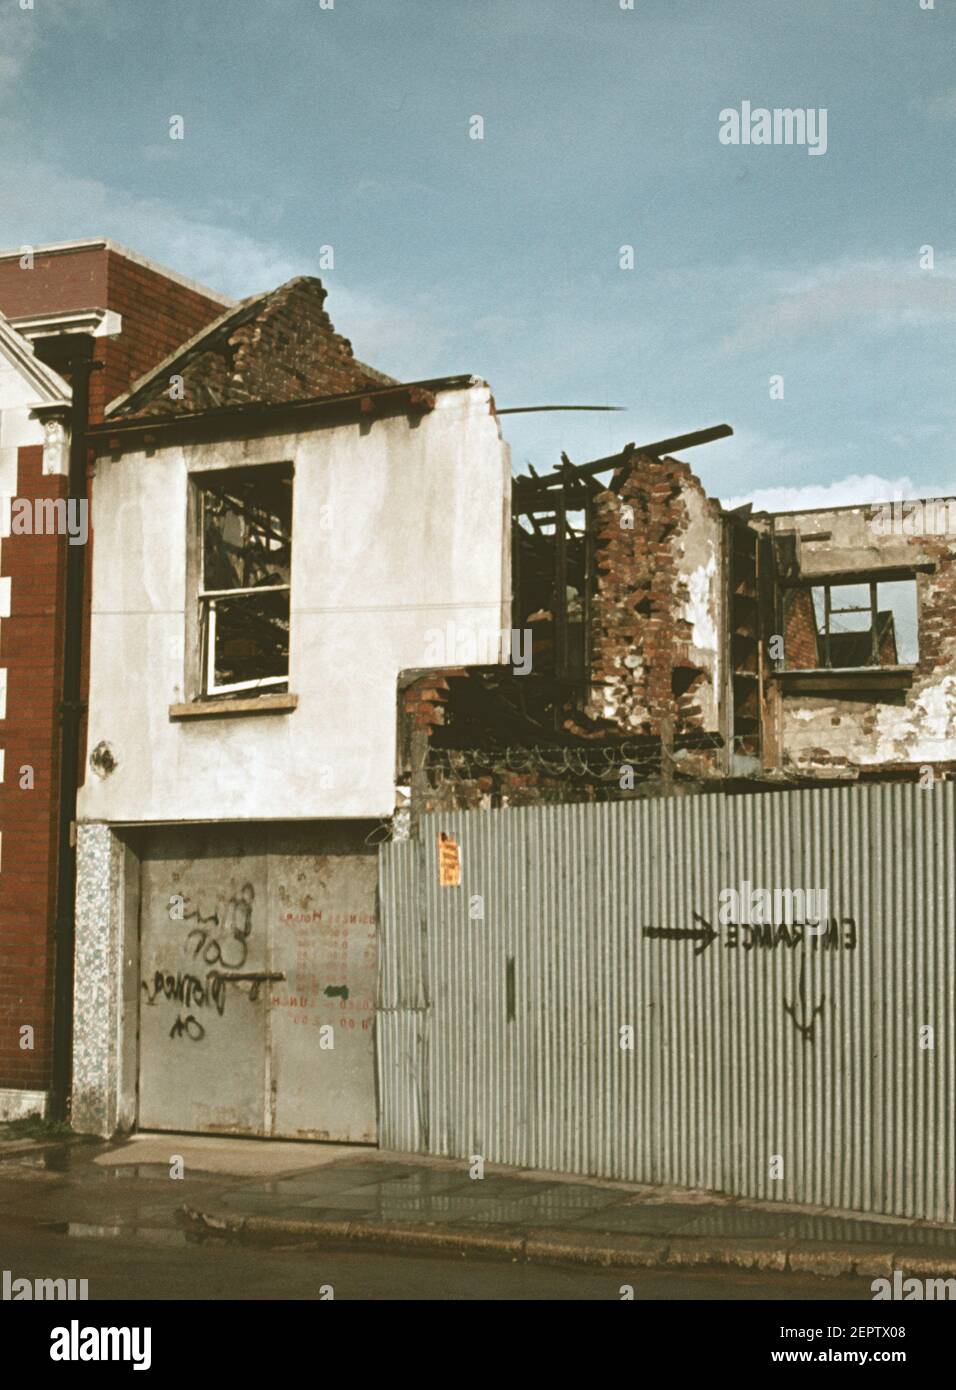 Maisons endommagées par les bombes à un lotissement de Belfast durant les troubles dans les années 1970, l'Irlande du Nord, Royaume-Uni Banque D'Images